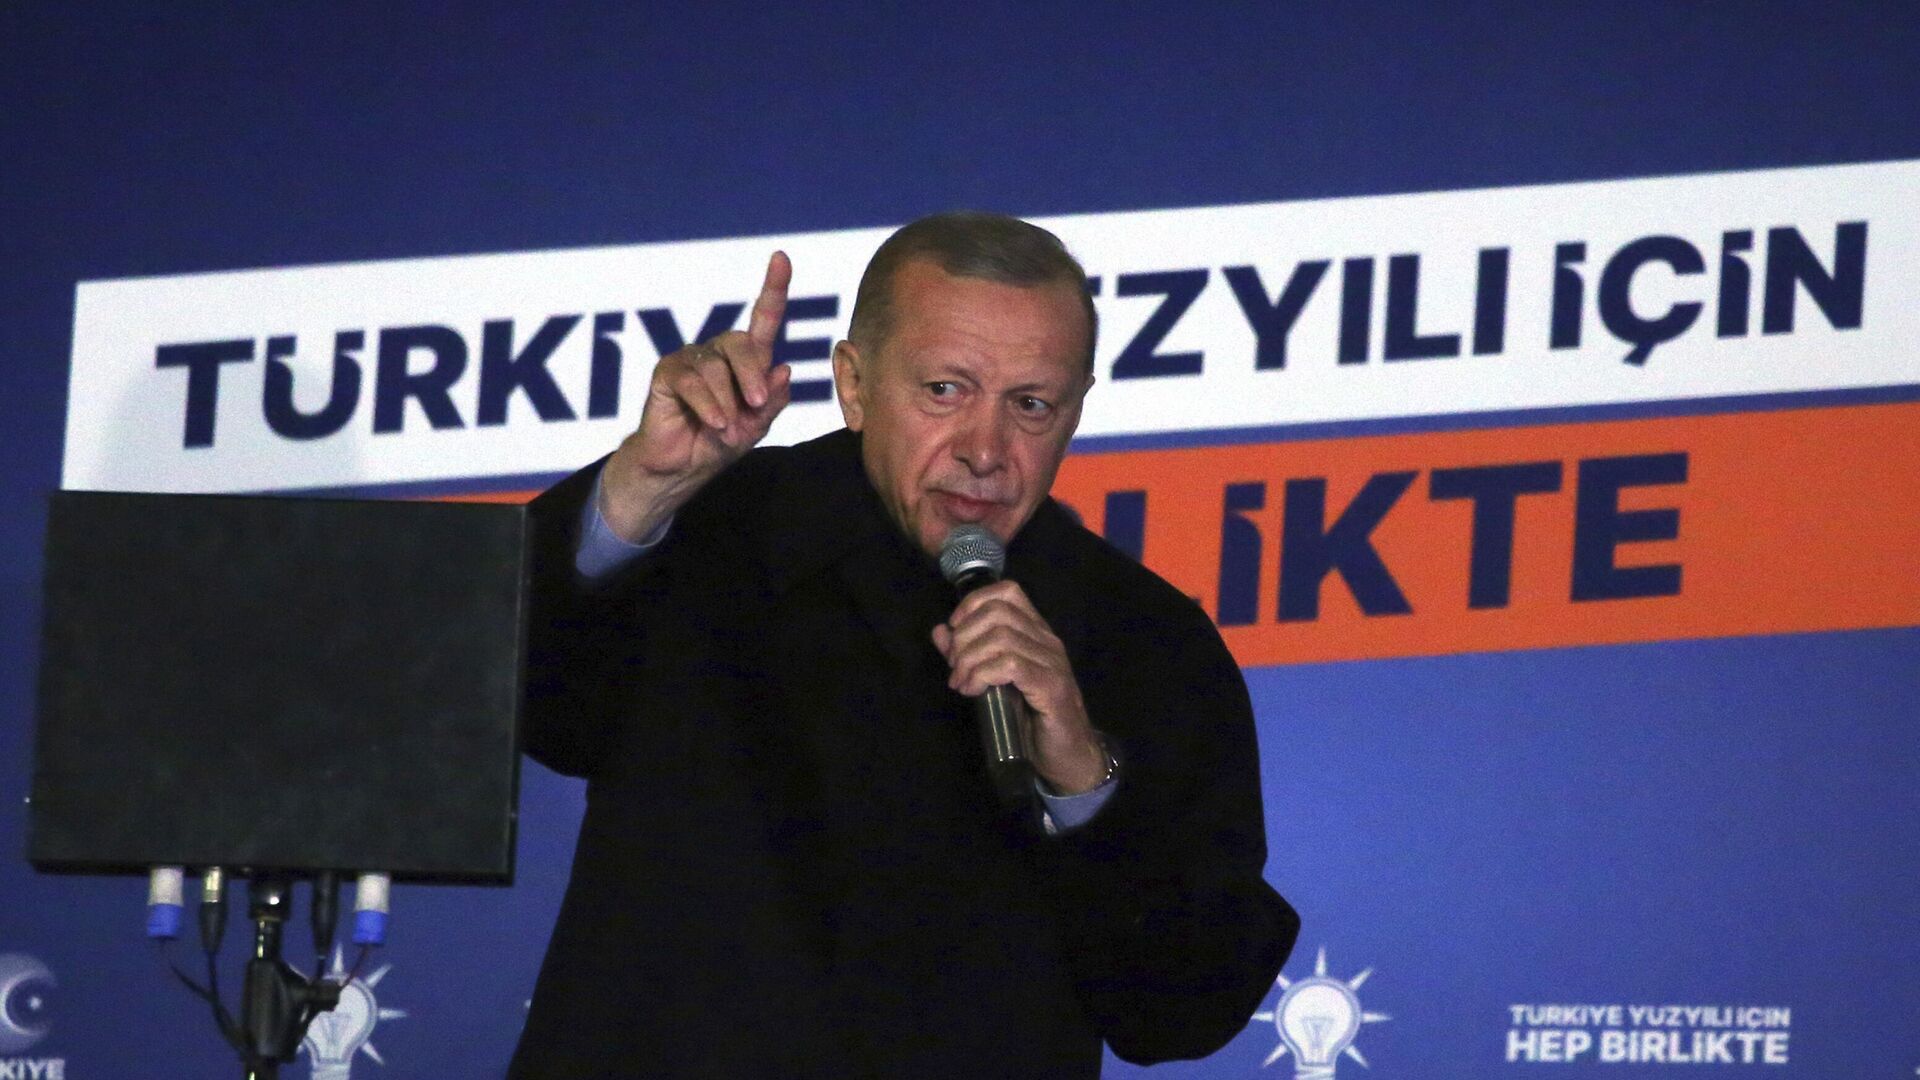 Президент Турции Реджеп Тайип Эрдоган выступает с речью перед сторонниками на выборах - Sputnik Таджикистан, 1920, 15.05.2023